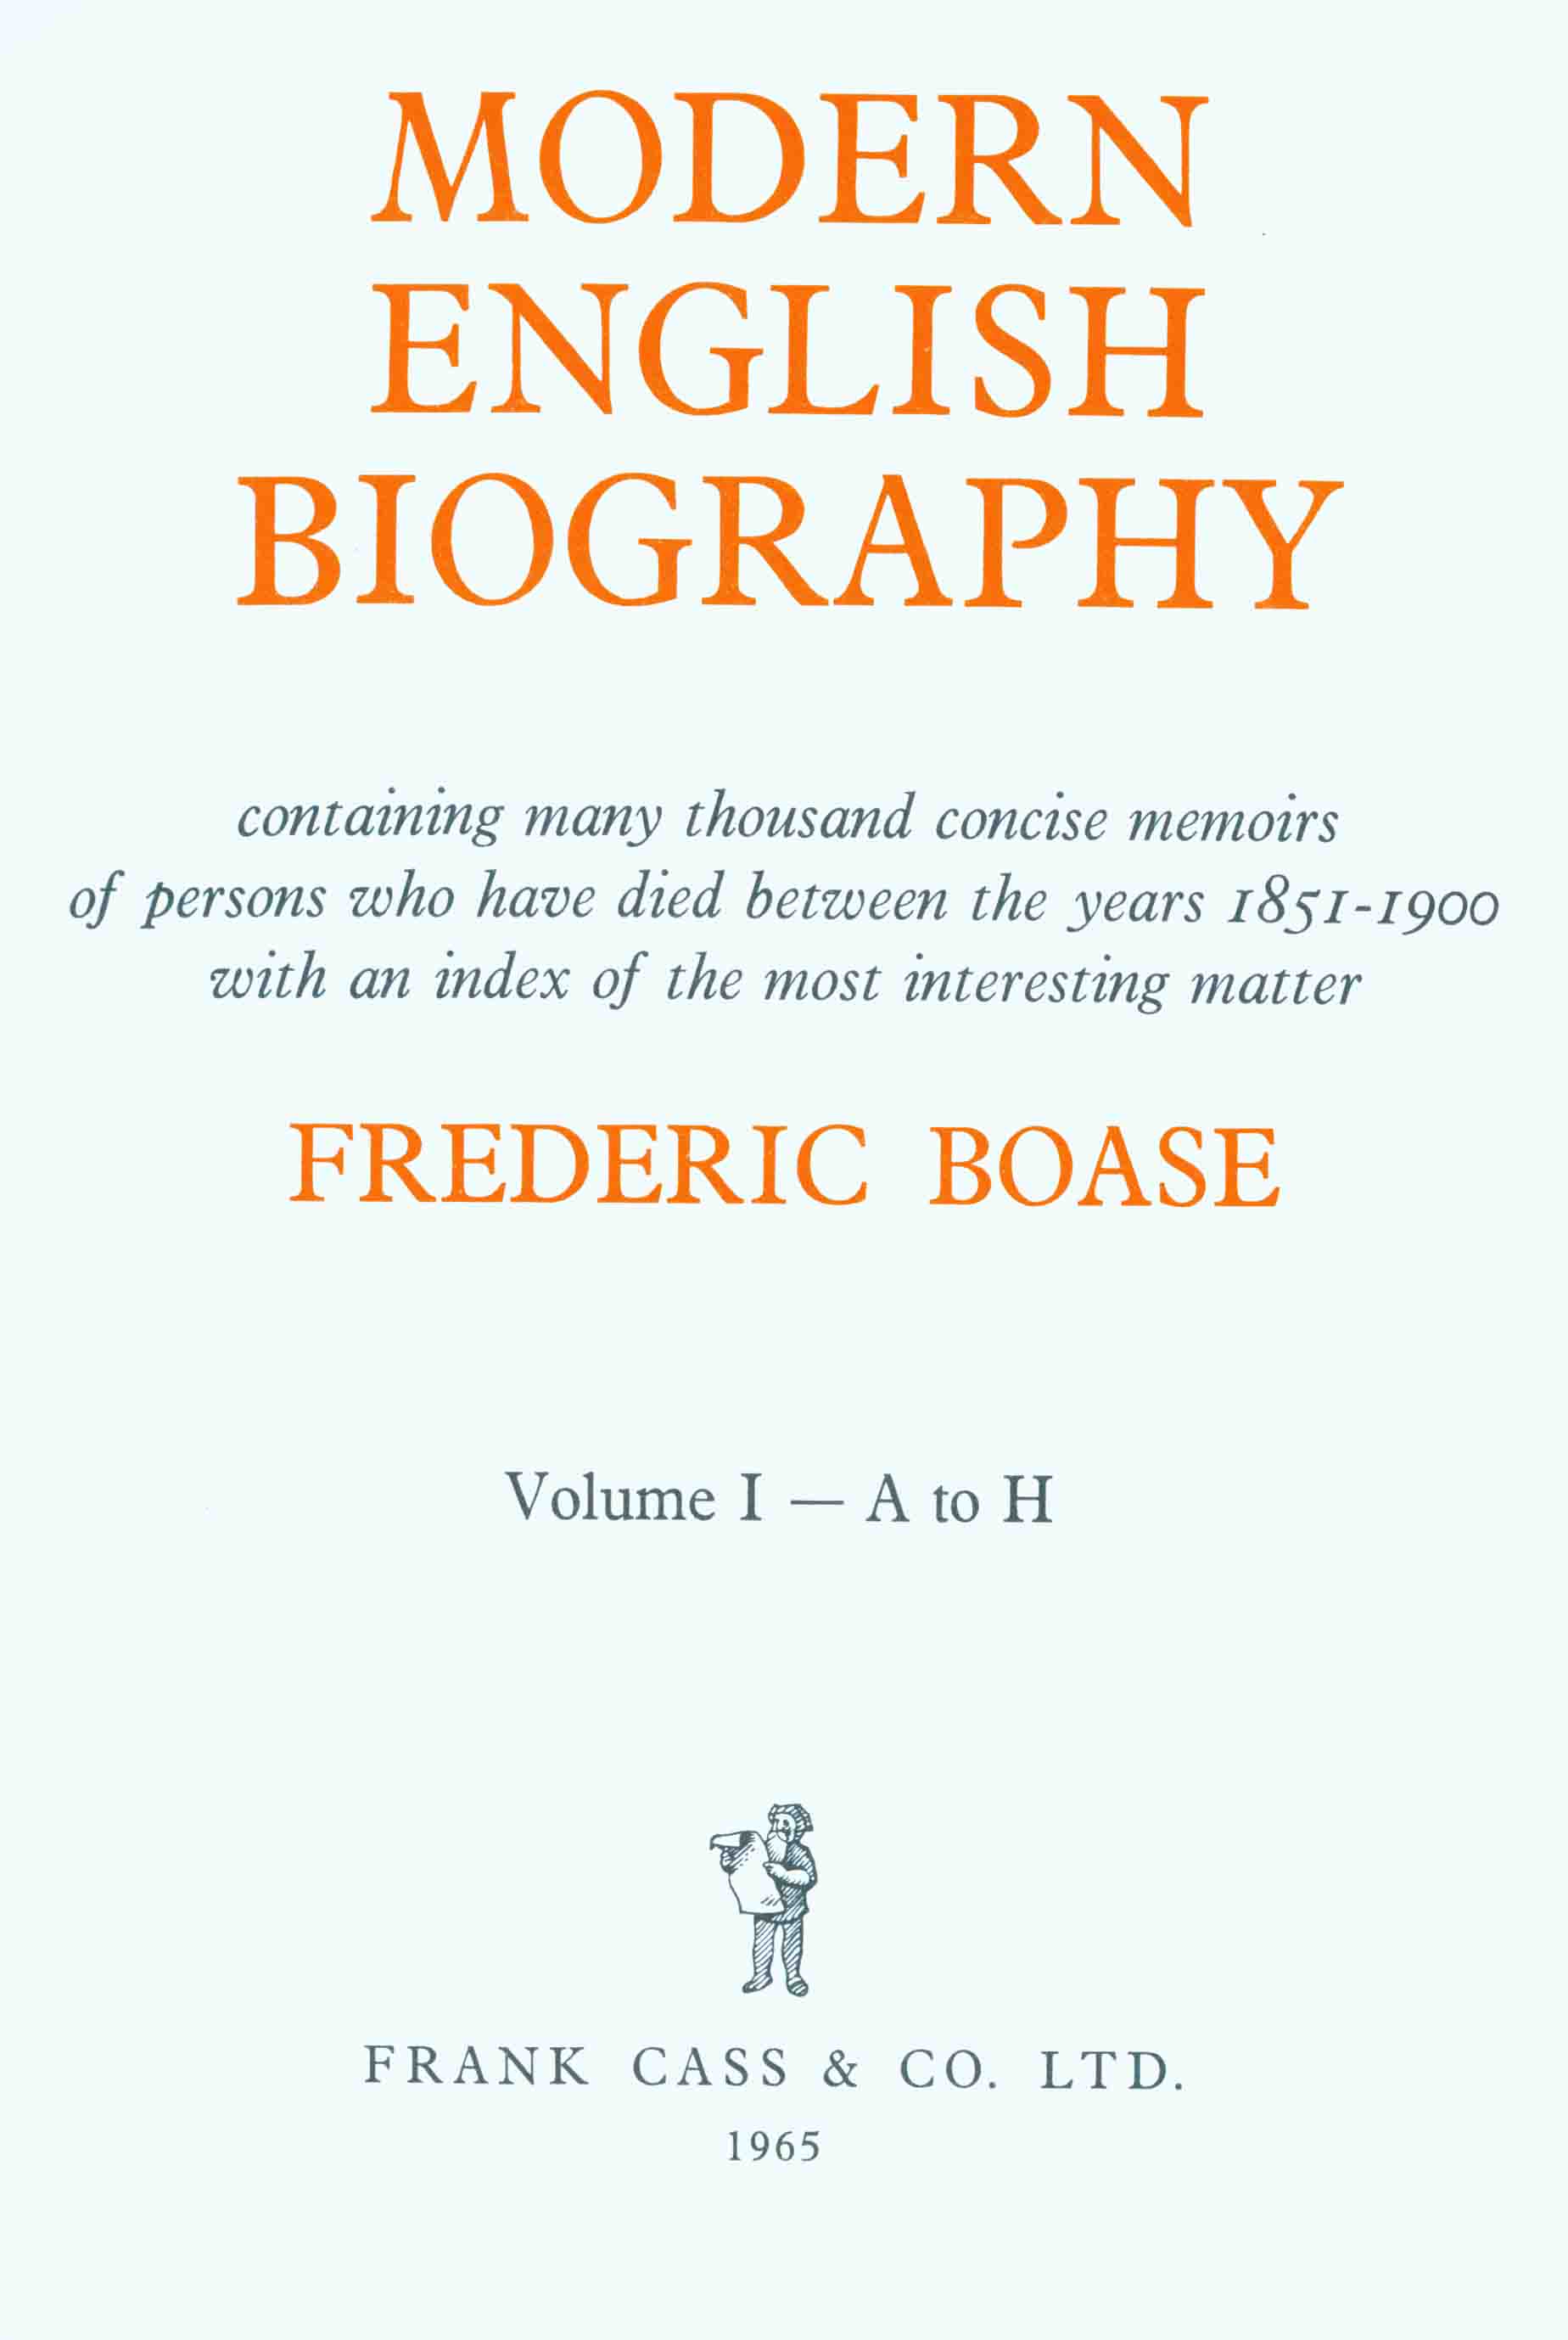 definicion de biography in english